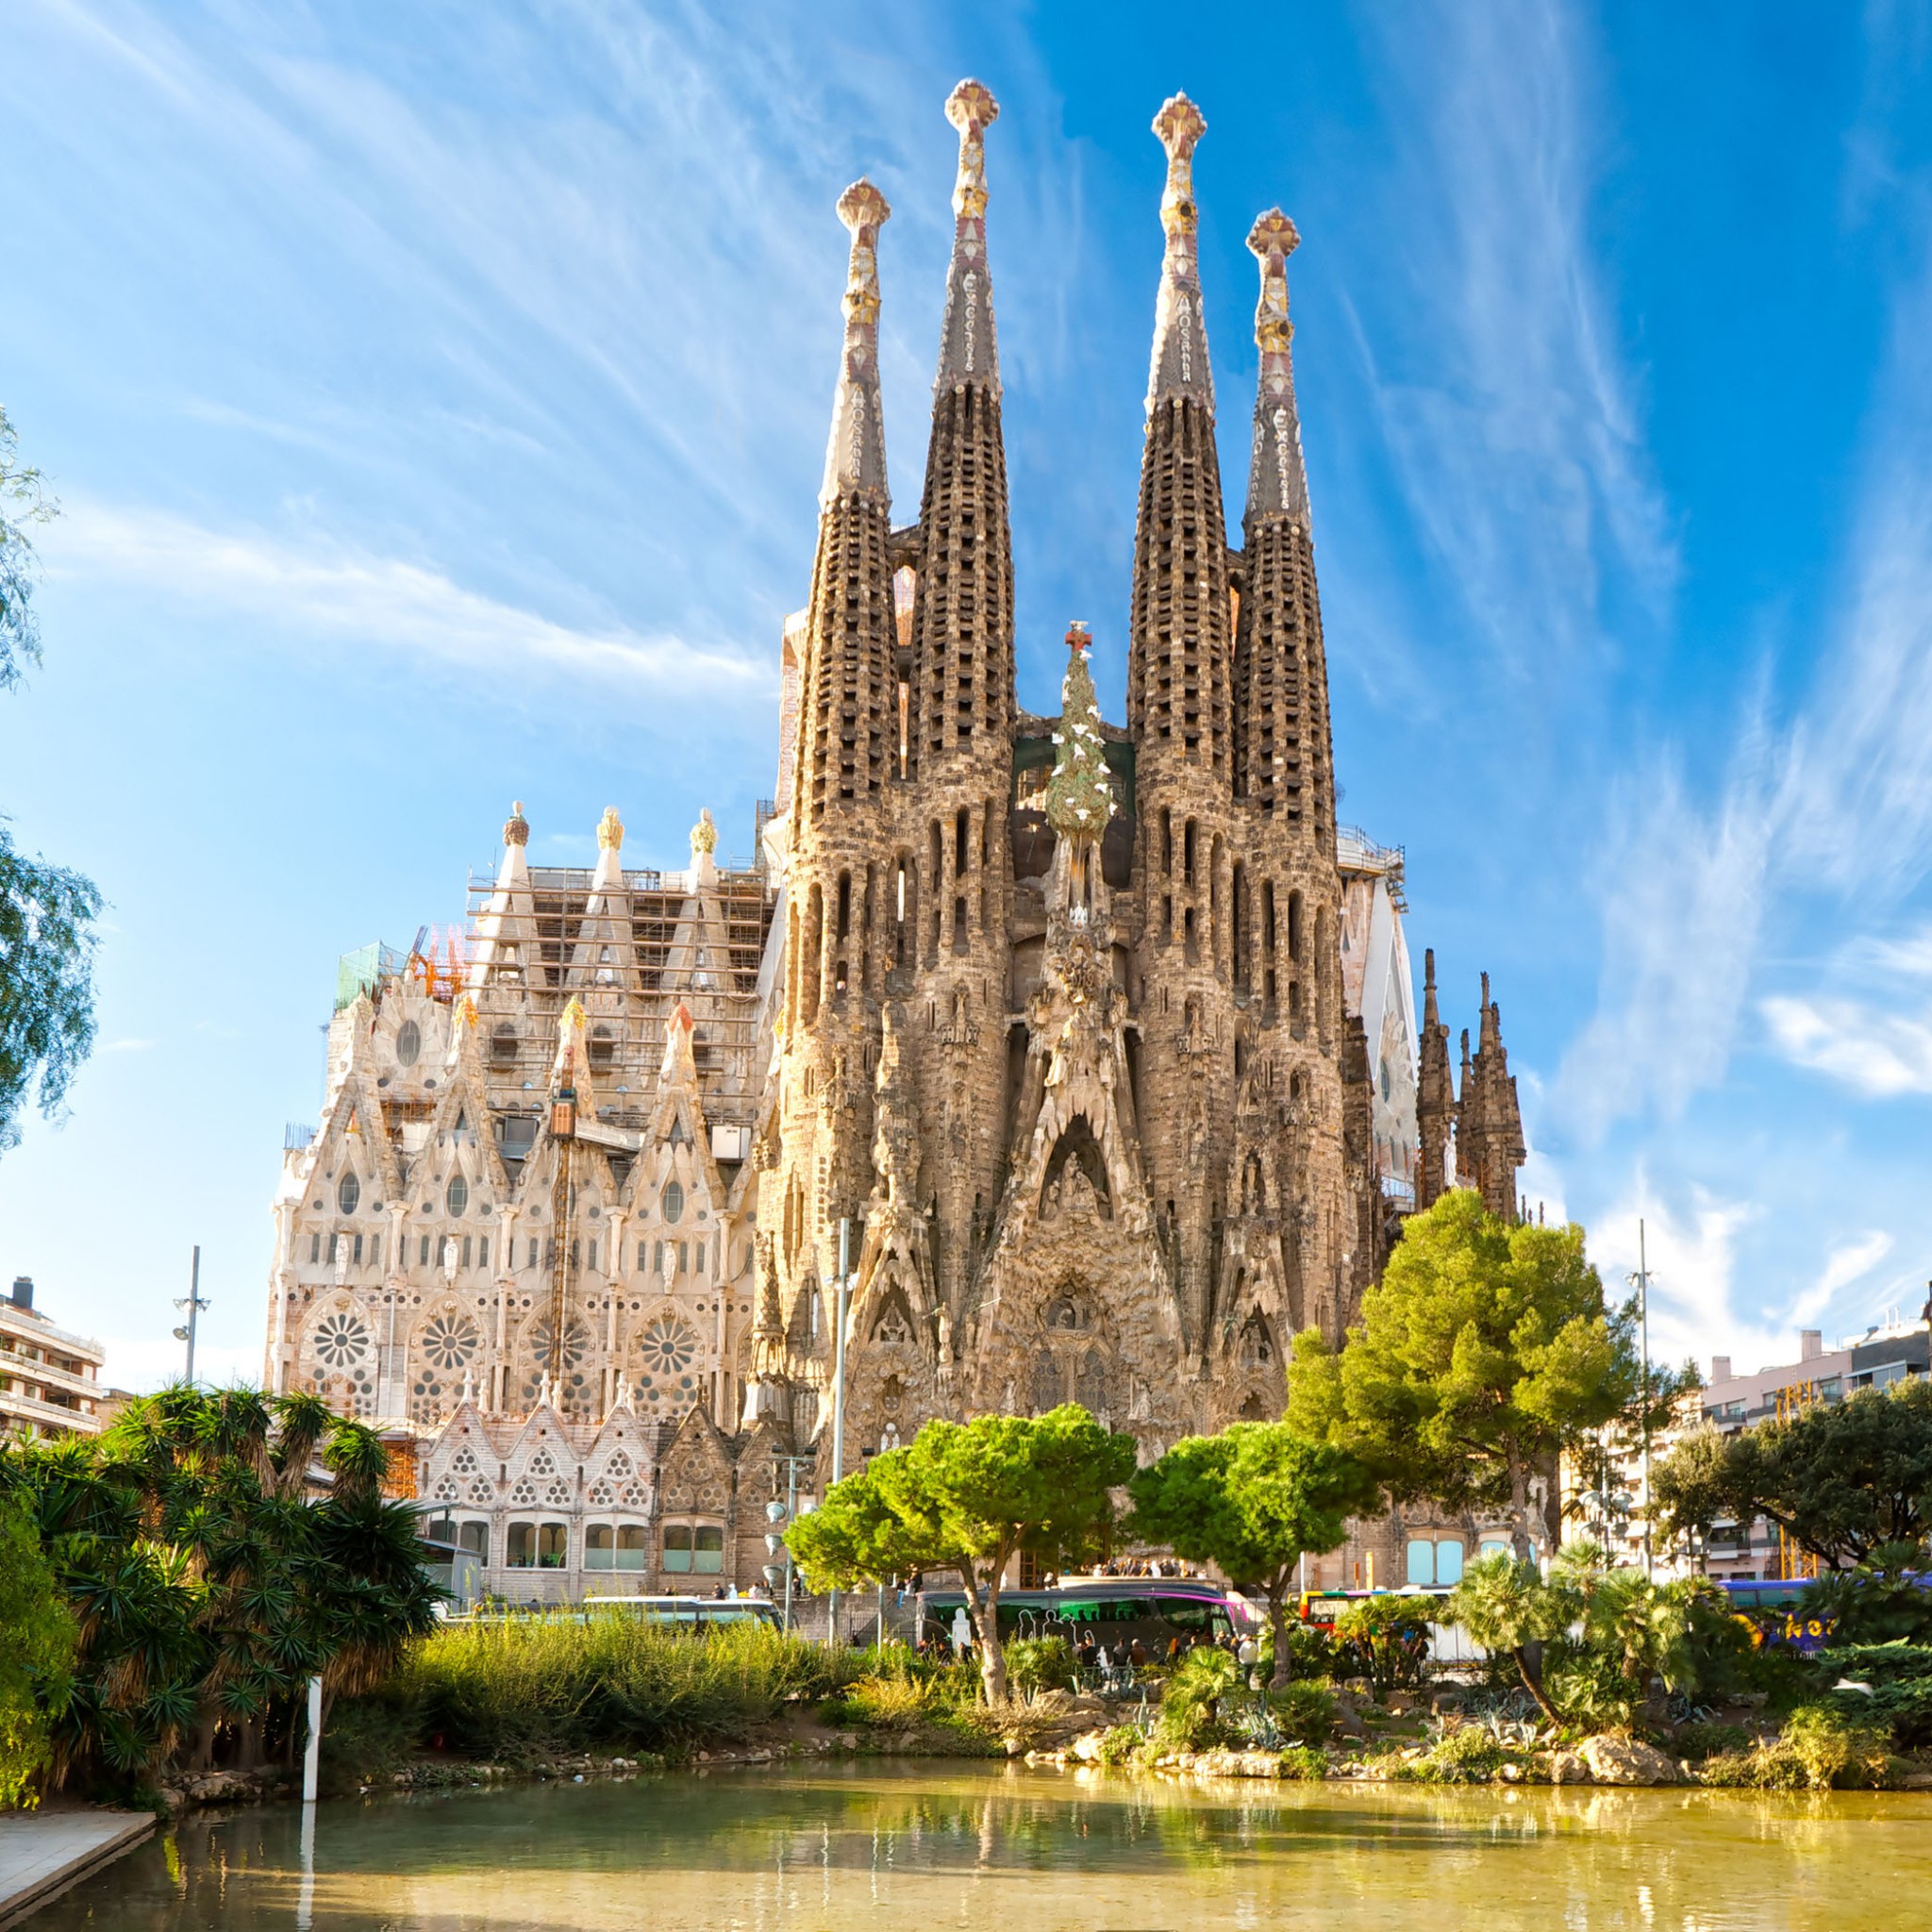 5 любых достопримечательностей. Испания Sagrada familia. Храм Святого семейства Барселона Испания.